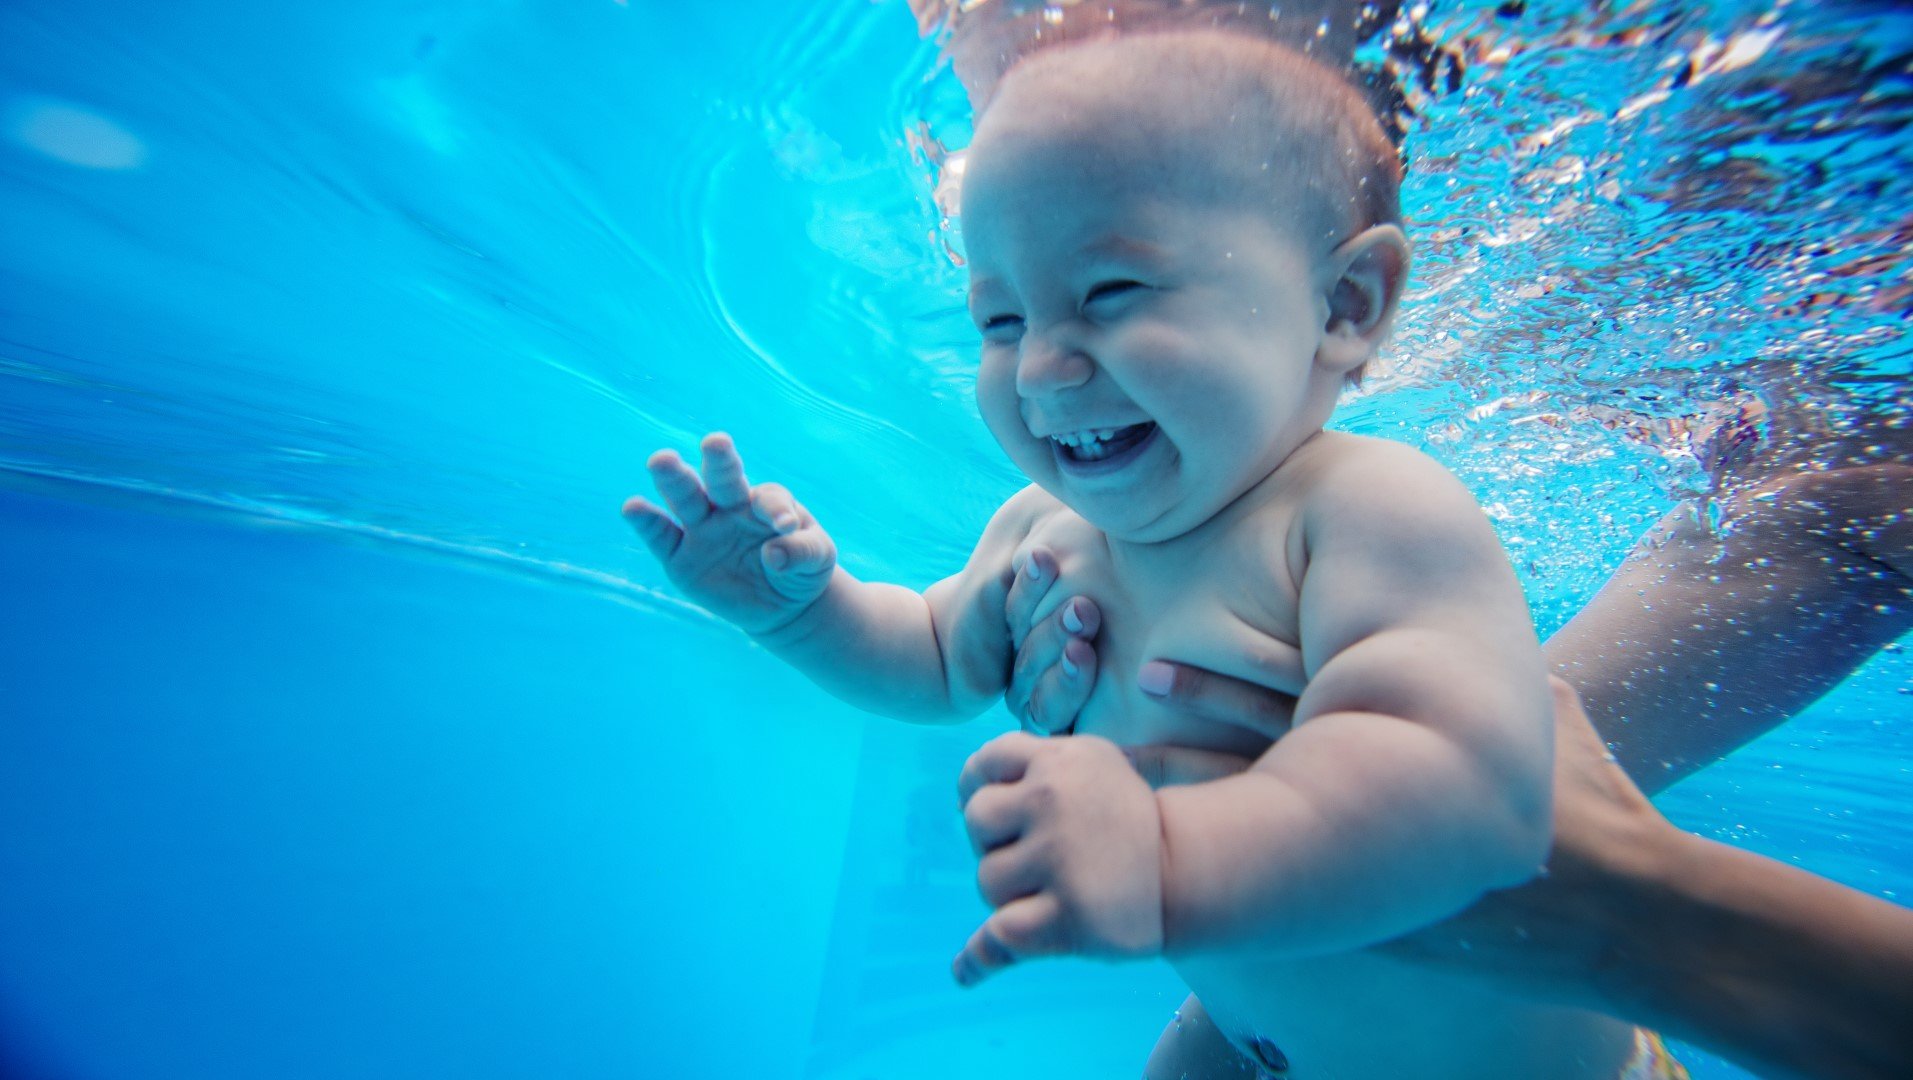 A LA BULLE D'EAU - Location piscine privée - Cours - Aquagym - Aquabike -  Kiné prénatale - Bébés nageurs - Montigny-le Tilleul - 0467 81 37 73